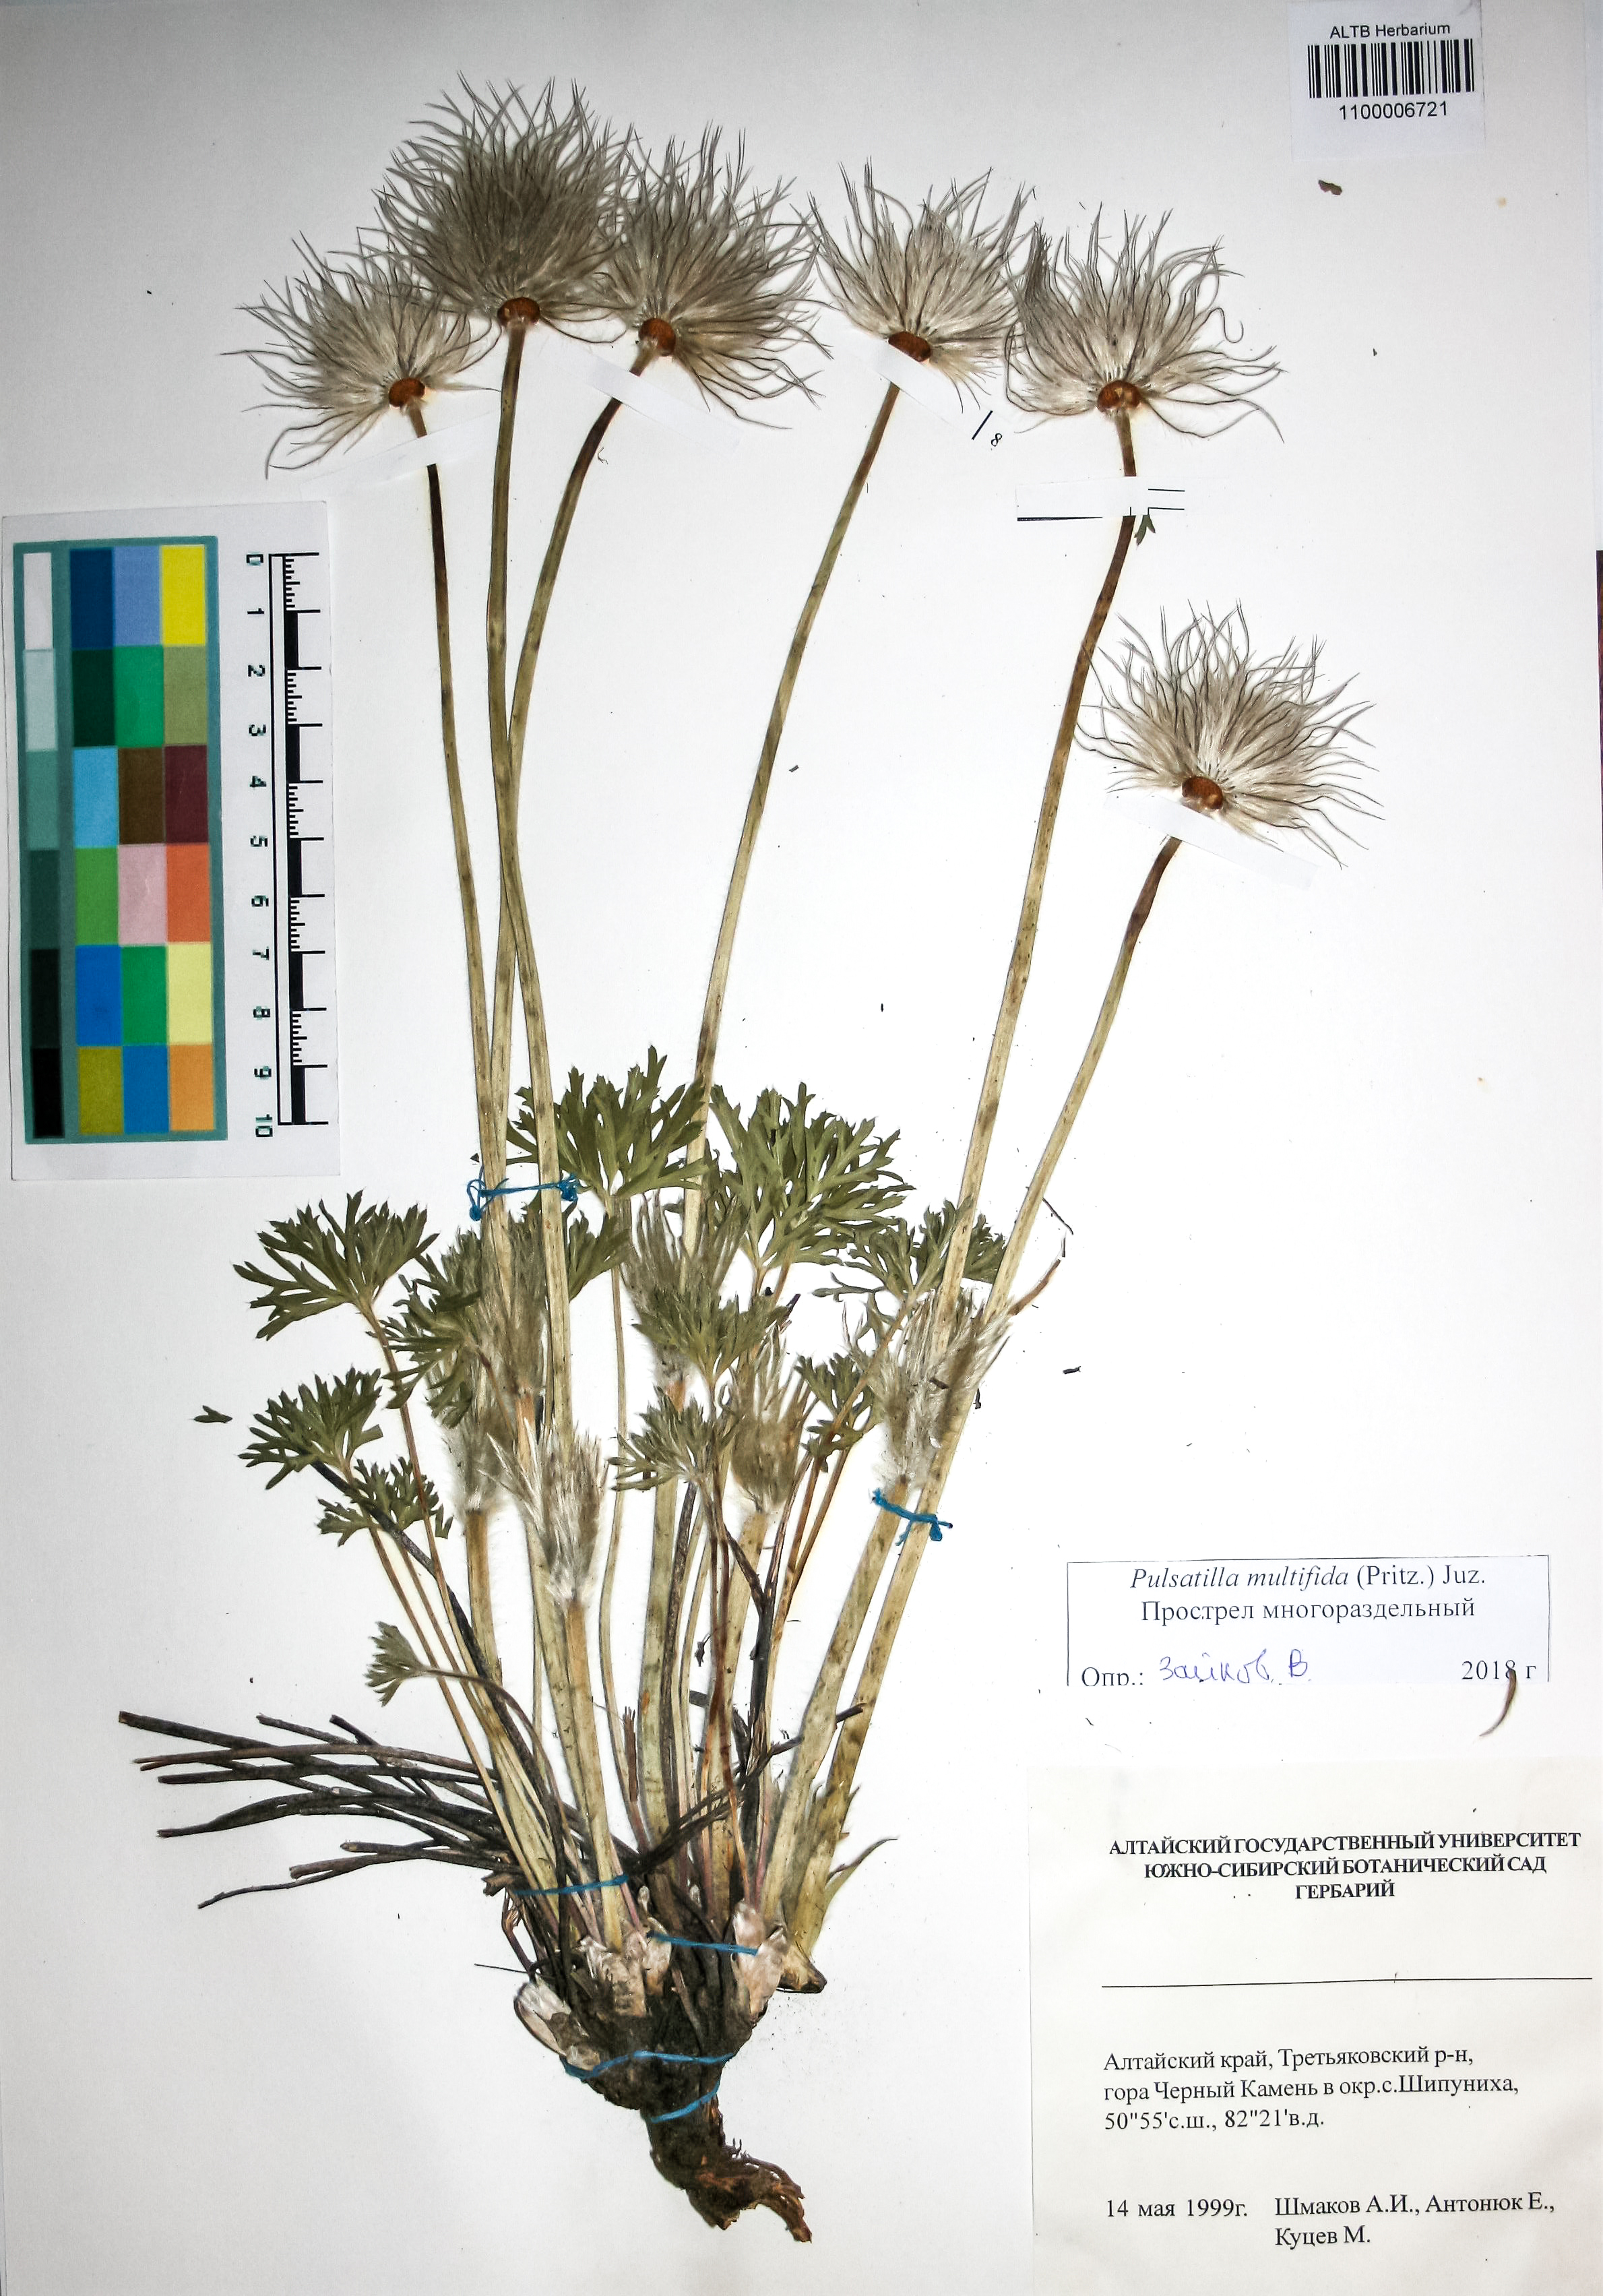 Ranunculaceae,Pulsatilla multifida (Pritz.) Juz.